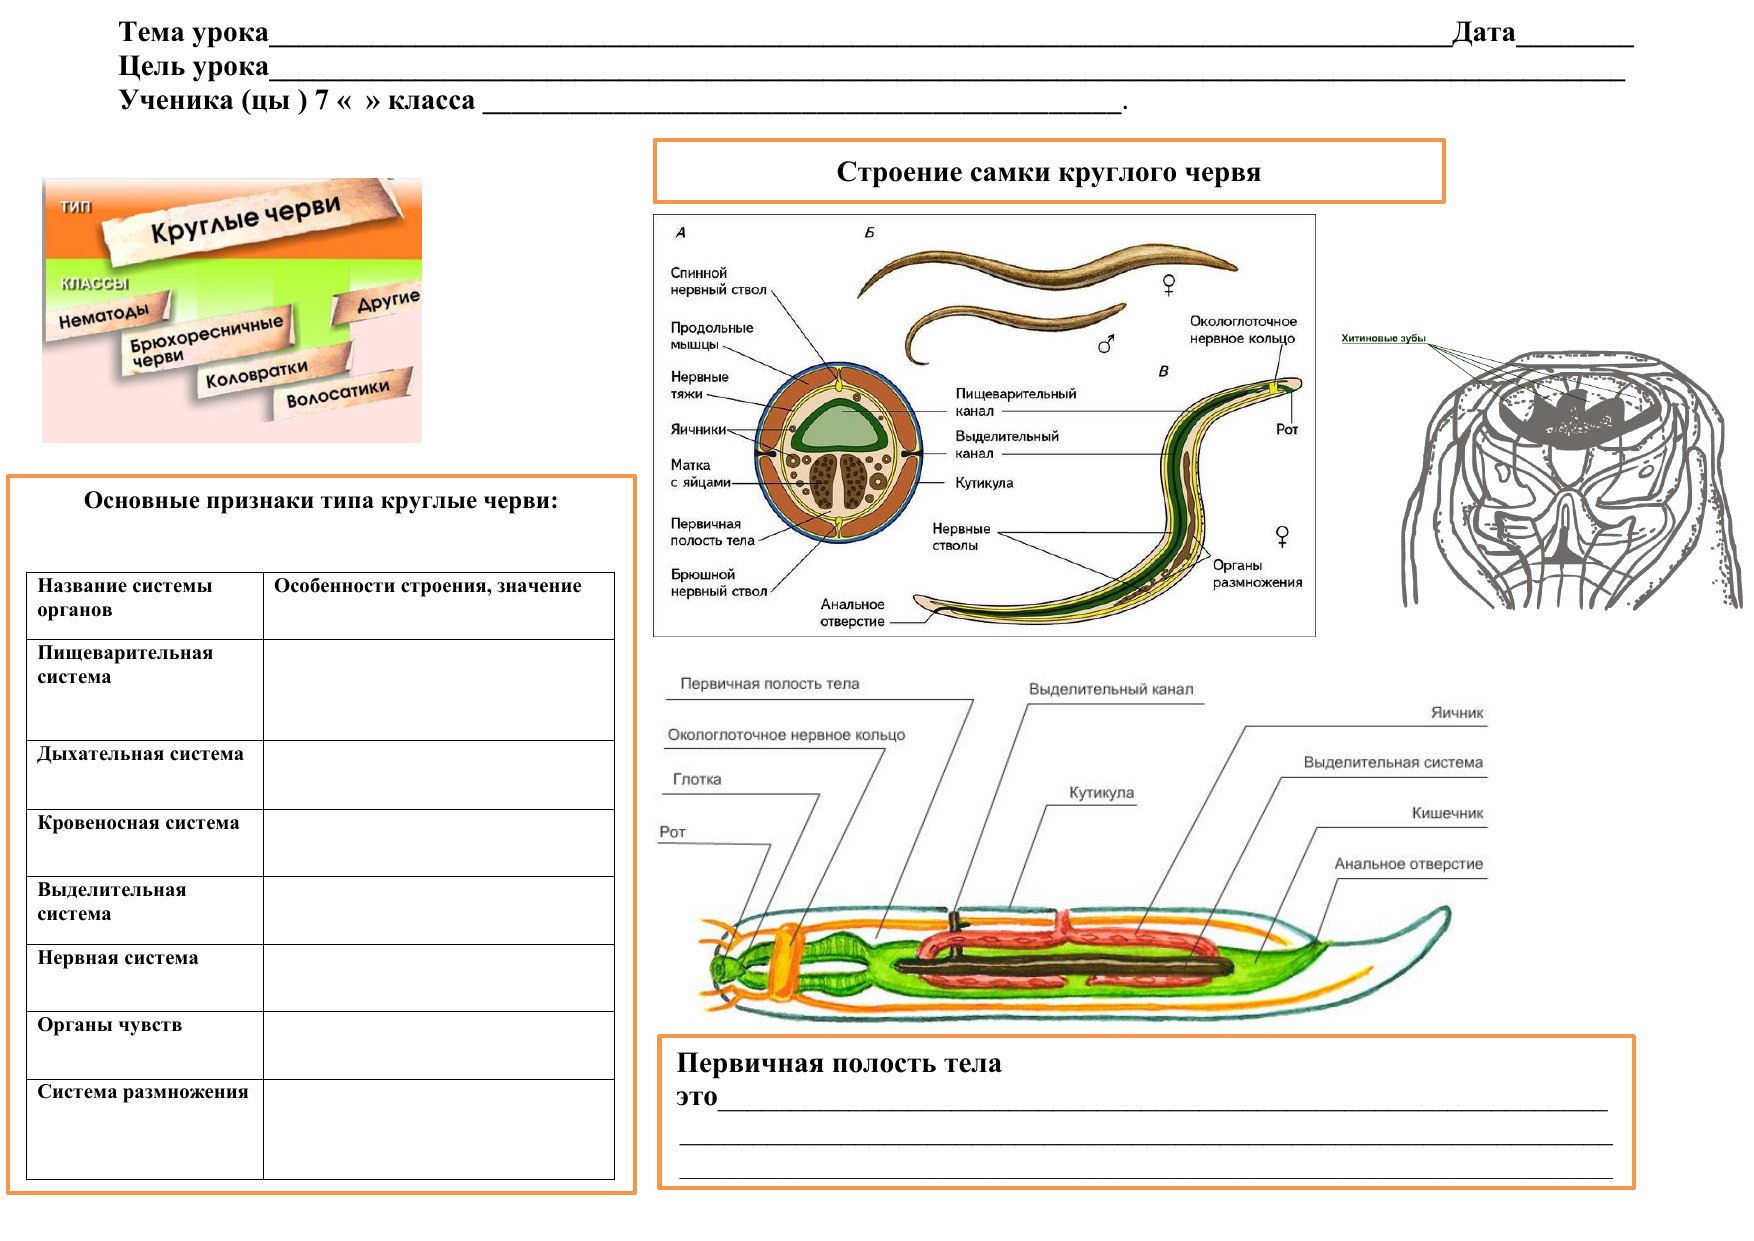 Тест черви егэ. Круглые черви строение 7 класс биология. Системы органов круглых червей 7 класс. Черви круглые строение типы систем. Система органов круглых червей 7 класс биология.